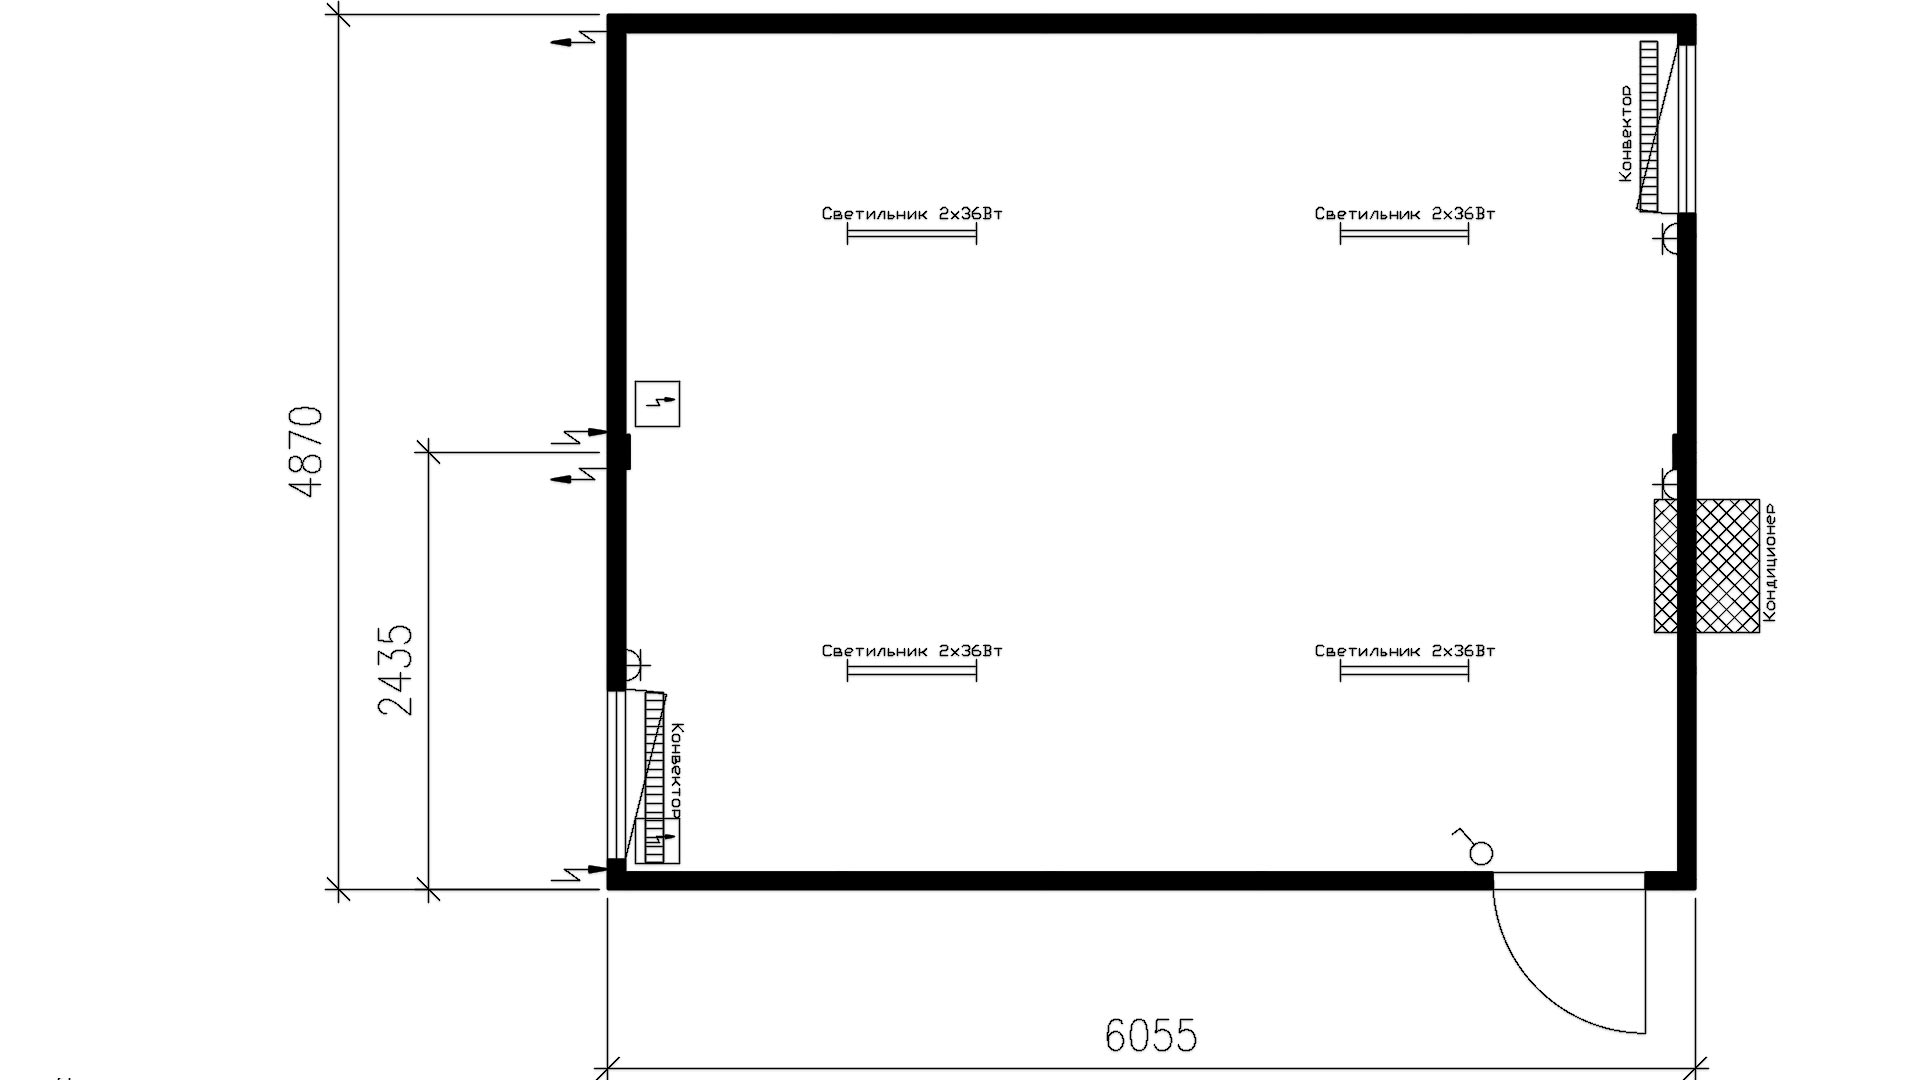 Планировка сдвоенного контейнера (2 окна, 2 конвектора, 1 кондиционер, 1 дверь) 20-футов, размеры: 2989/4870/2750 (Д/Ш/В) мм